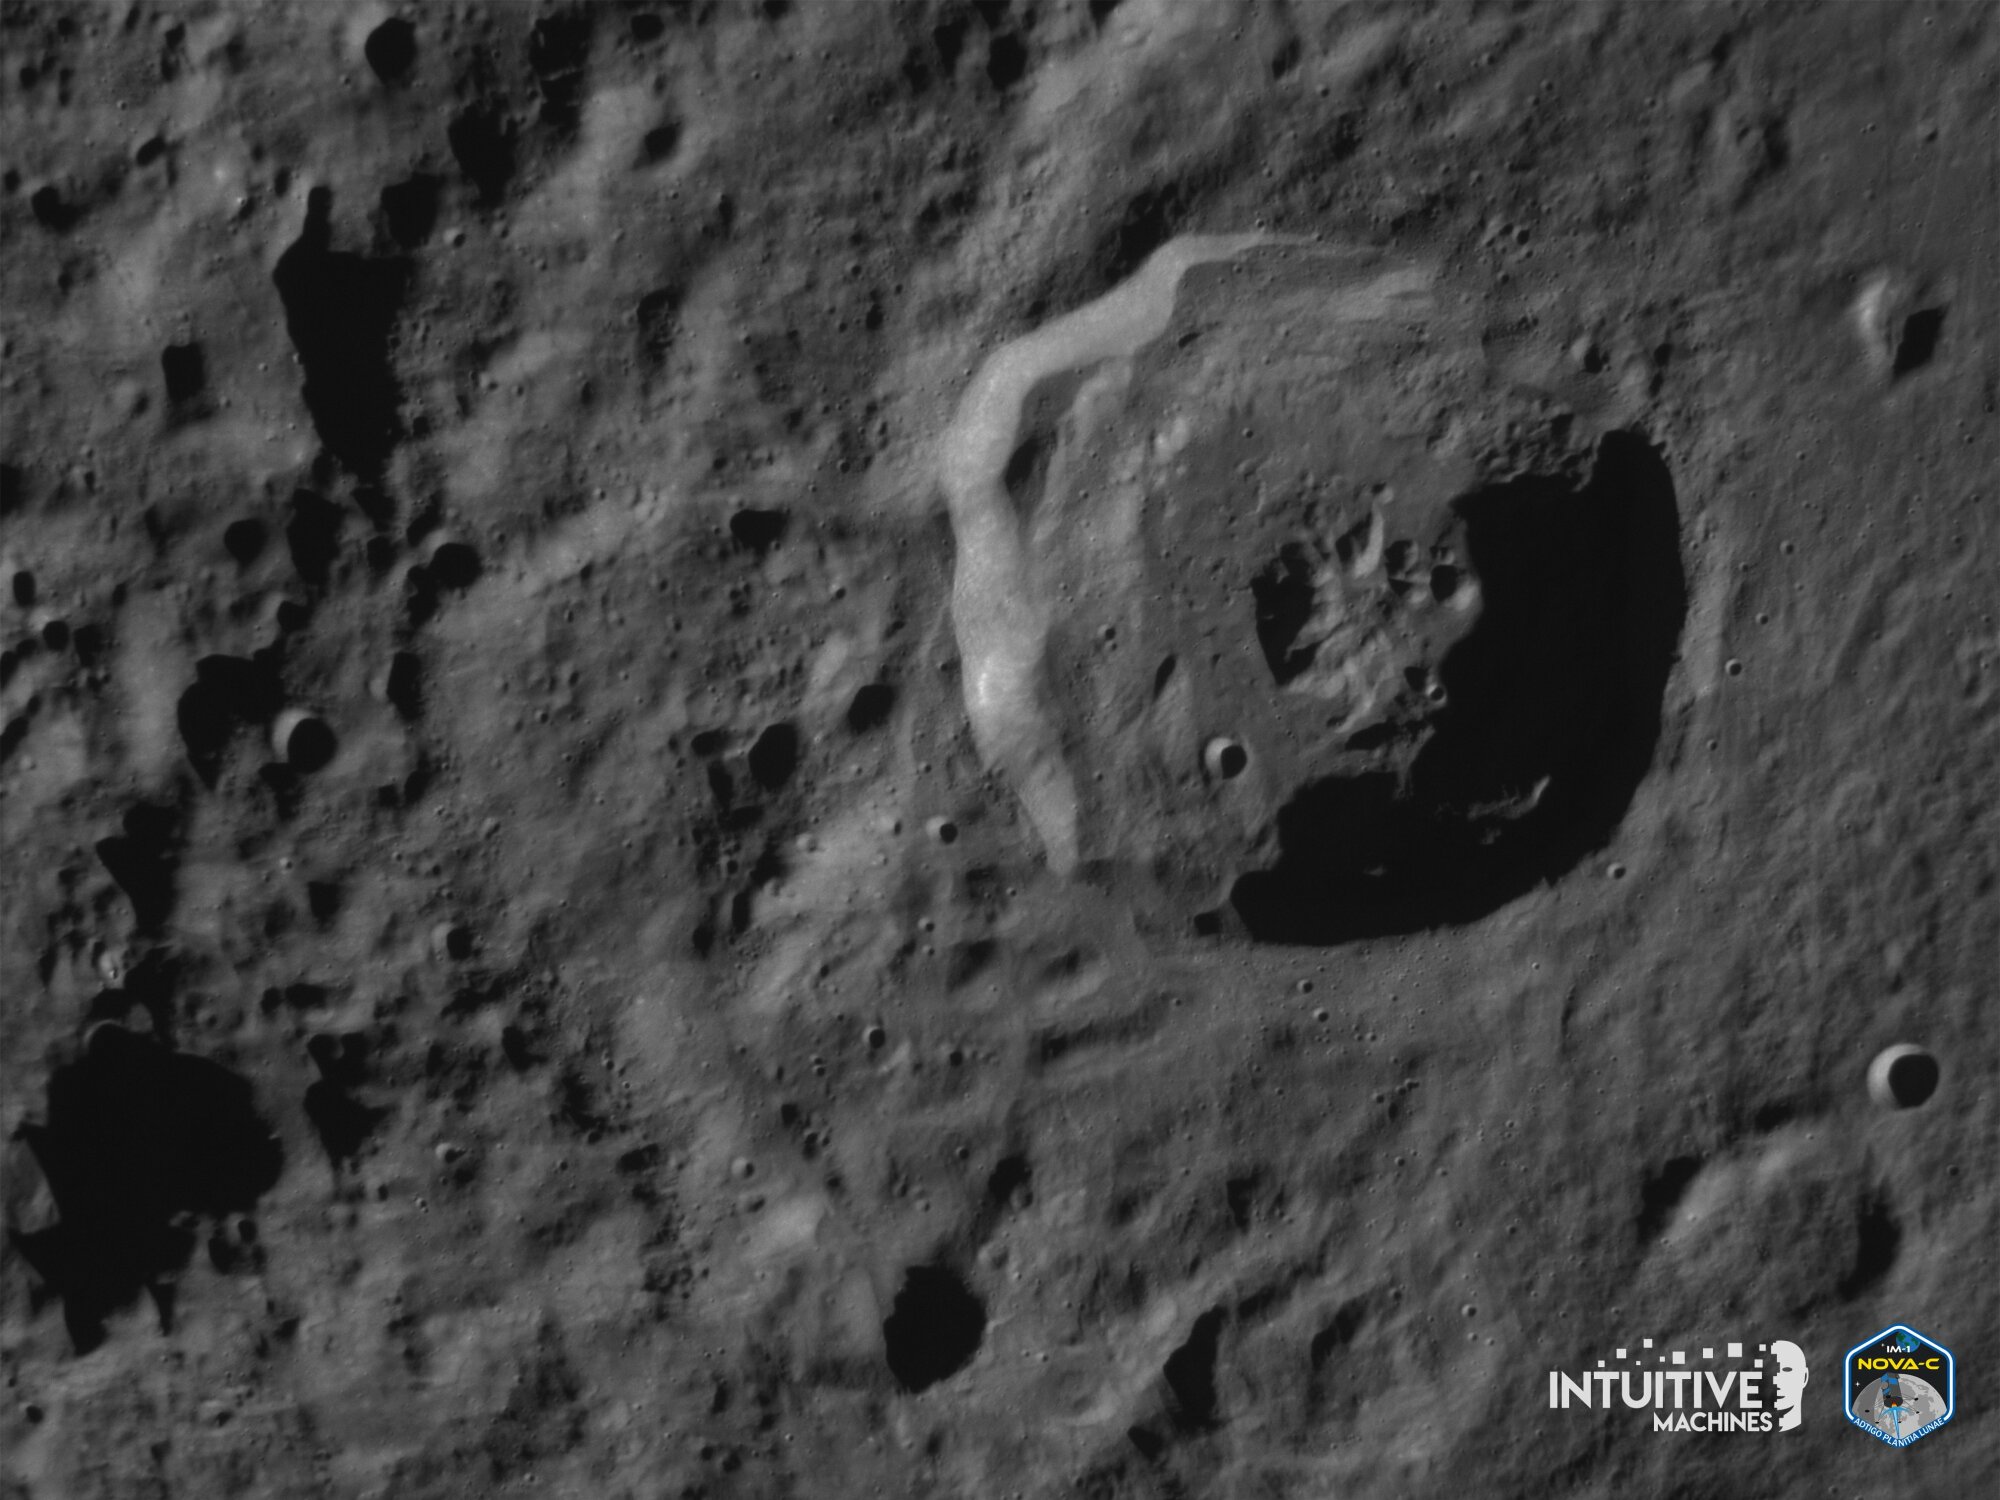 Ulysse prend des photos de la surface lunaire